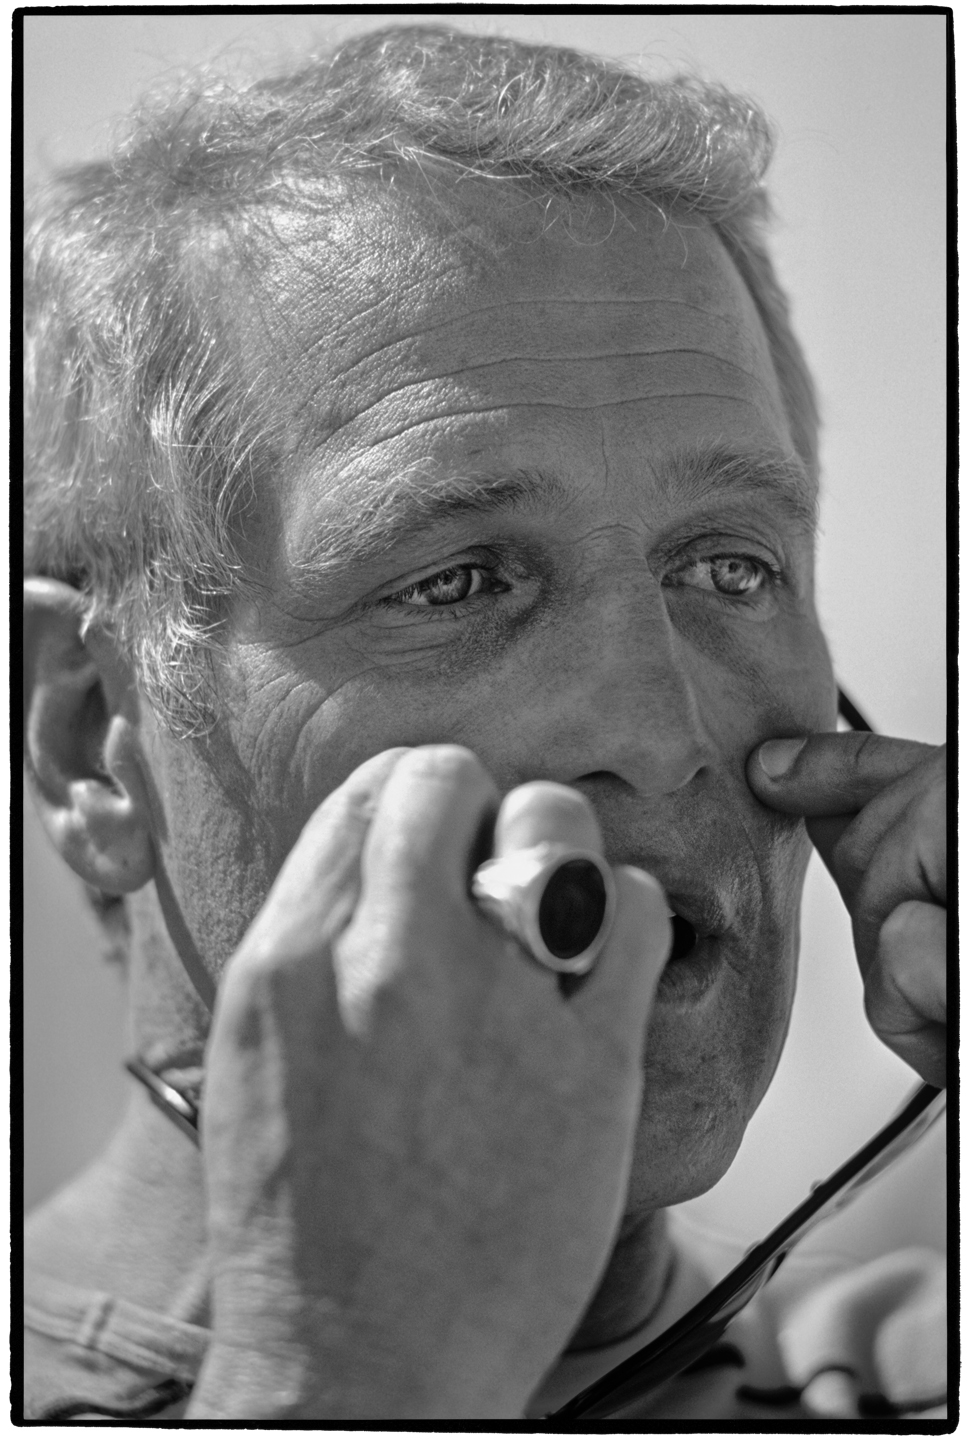 Paul Newman portraits